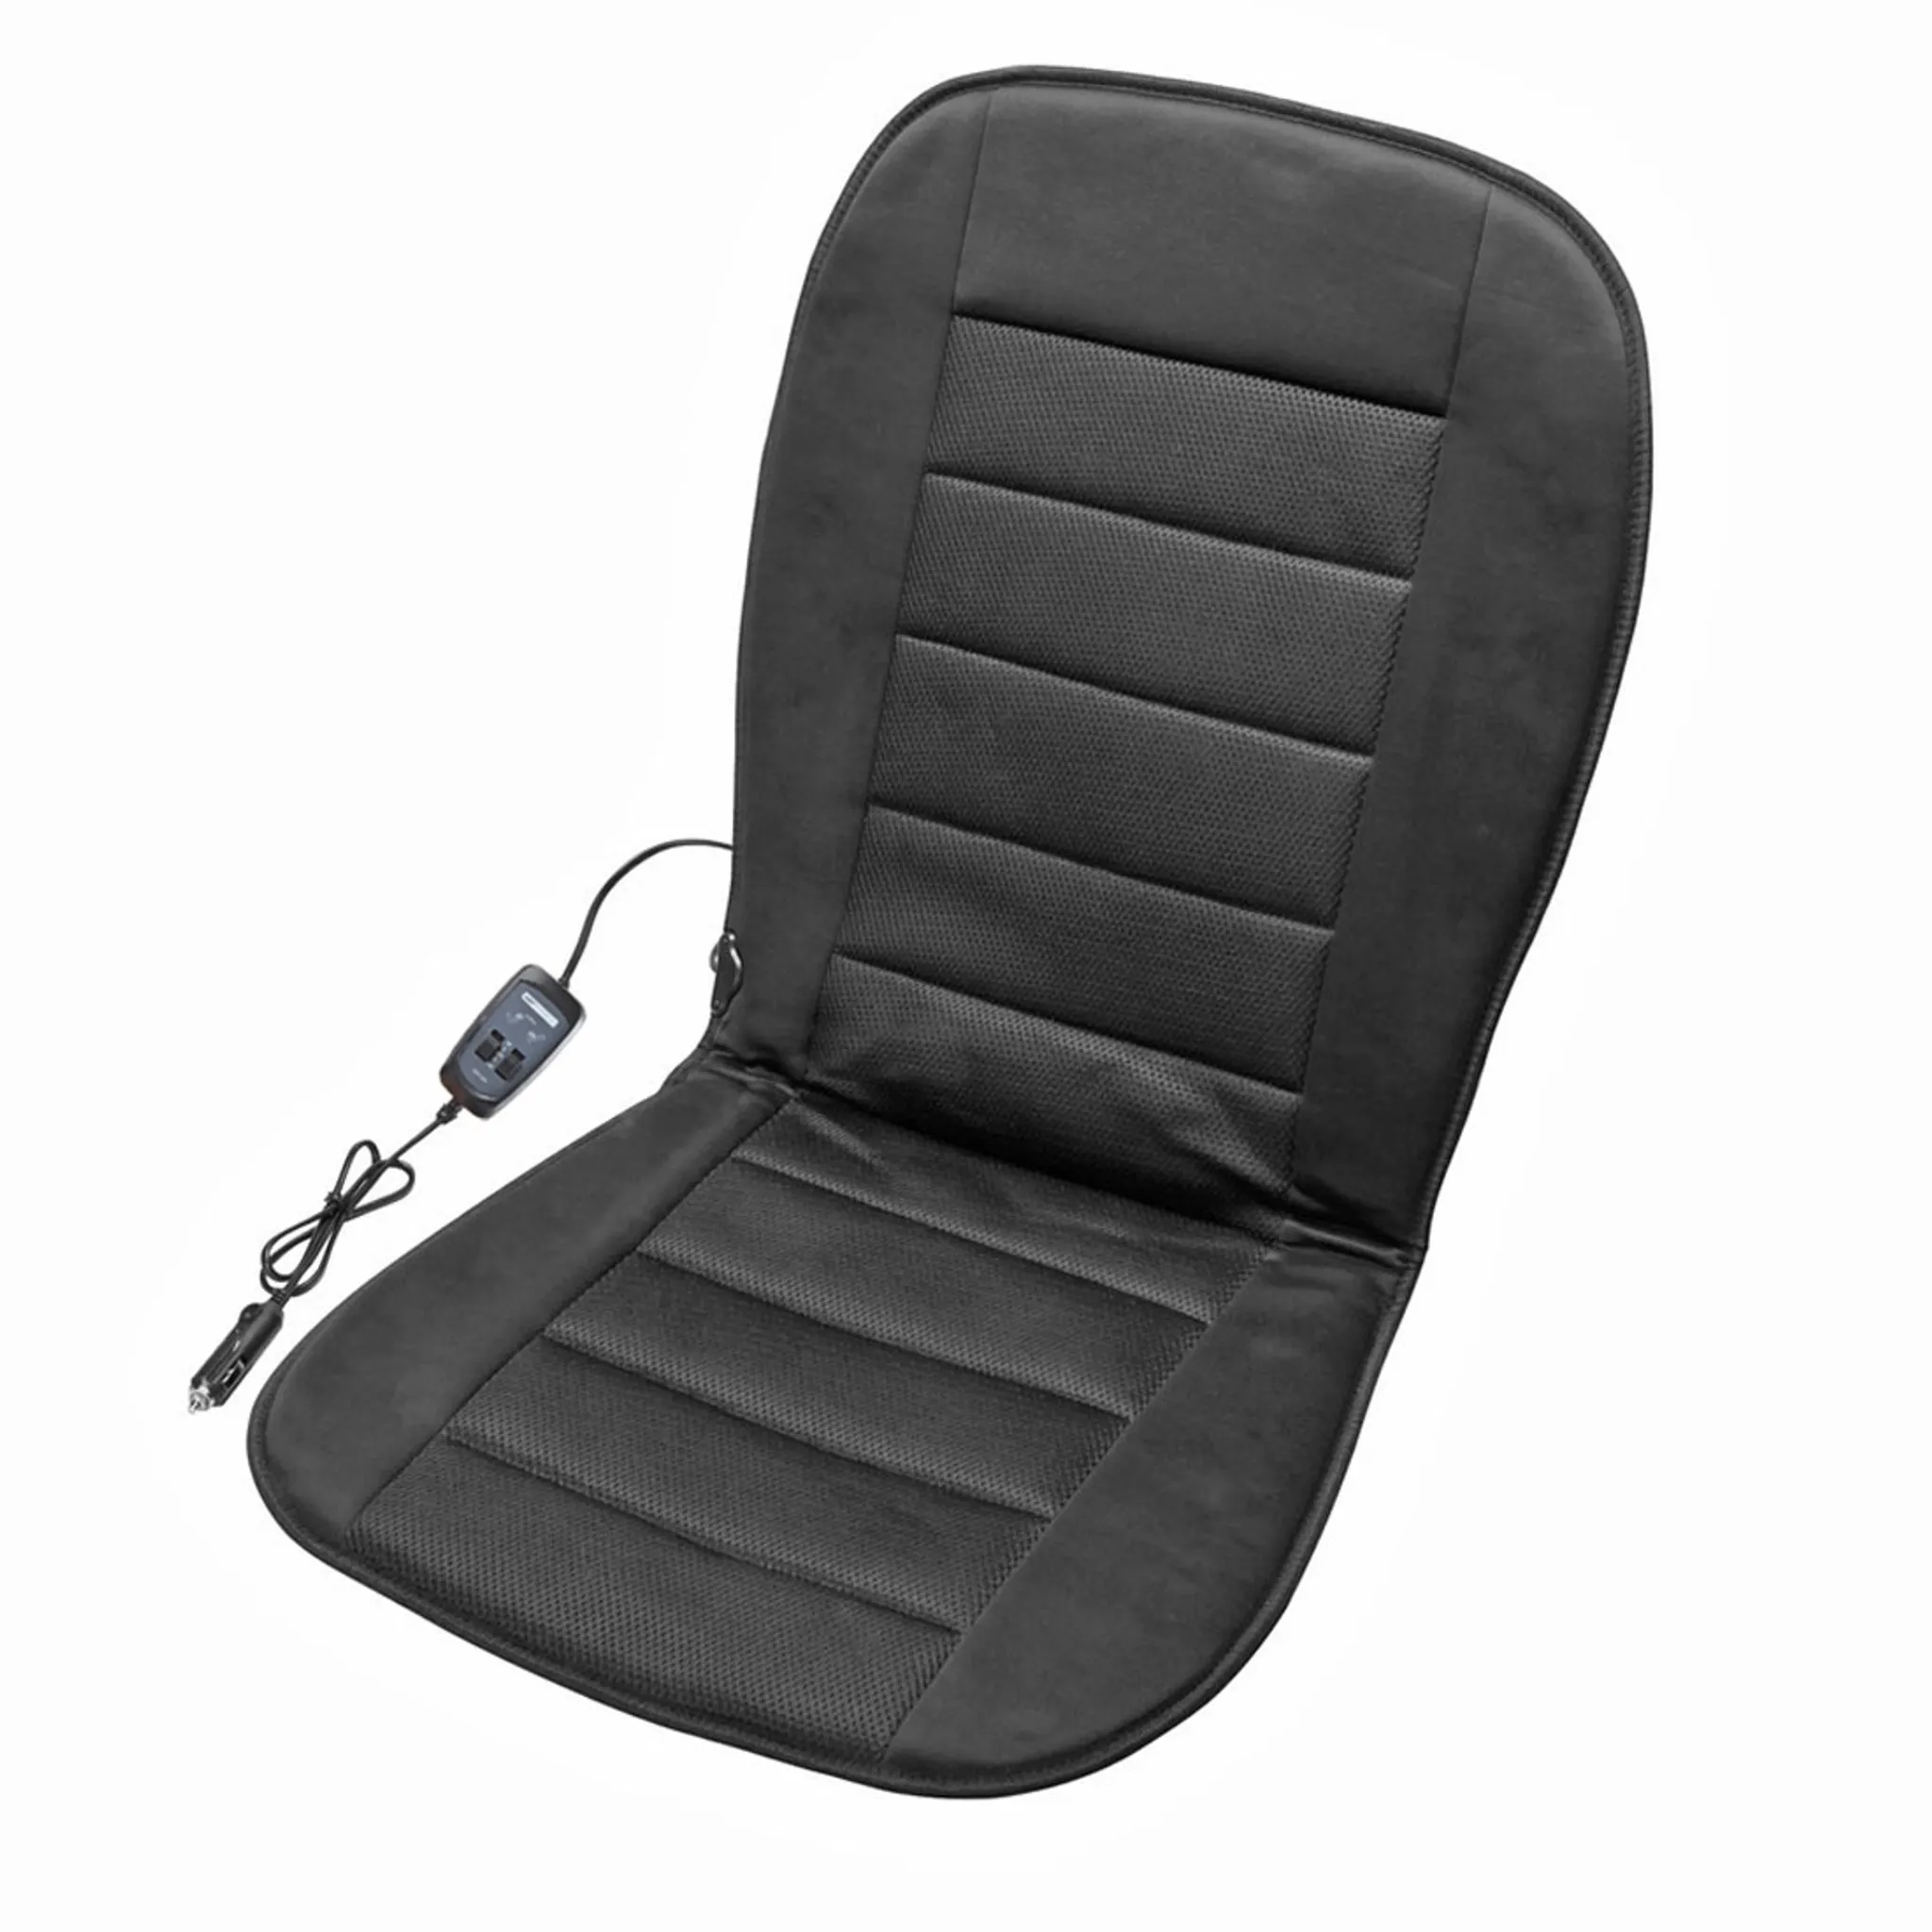 Heizmatte Seat Ergomed online bestellen bei Carsetz